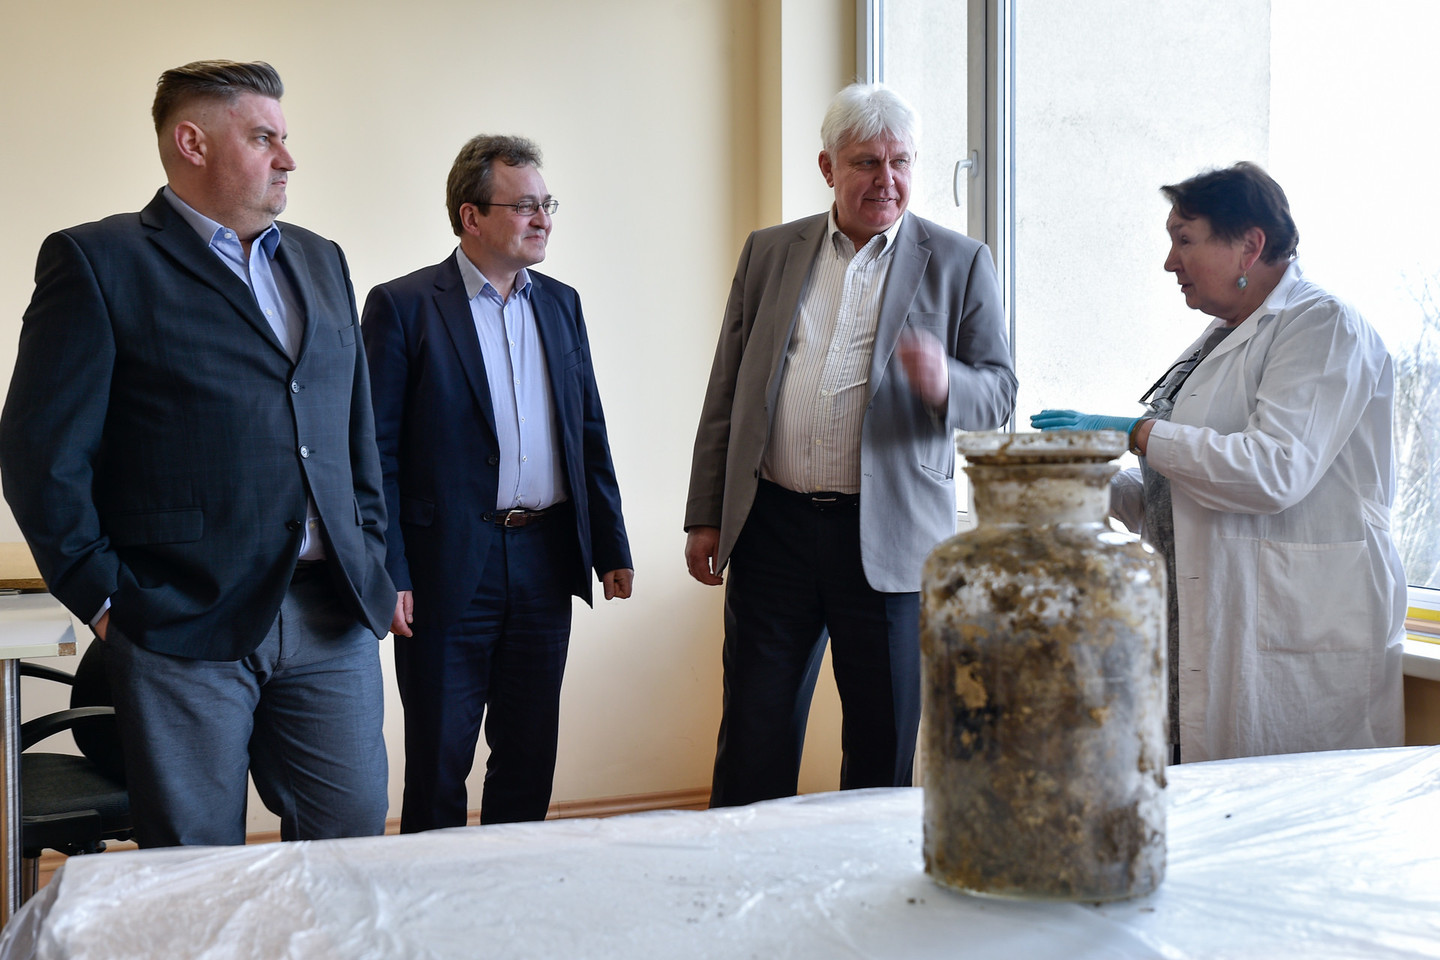 Marijampolėje surastas didžiulis stiklinis indas su senais dokumentais buvo atidarytas Lietuvos centriniame valstybės archyve Vilniuje.<br>V.Ščiavinsko nuotr.